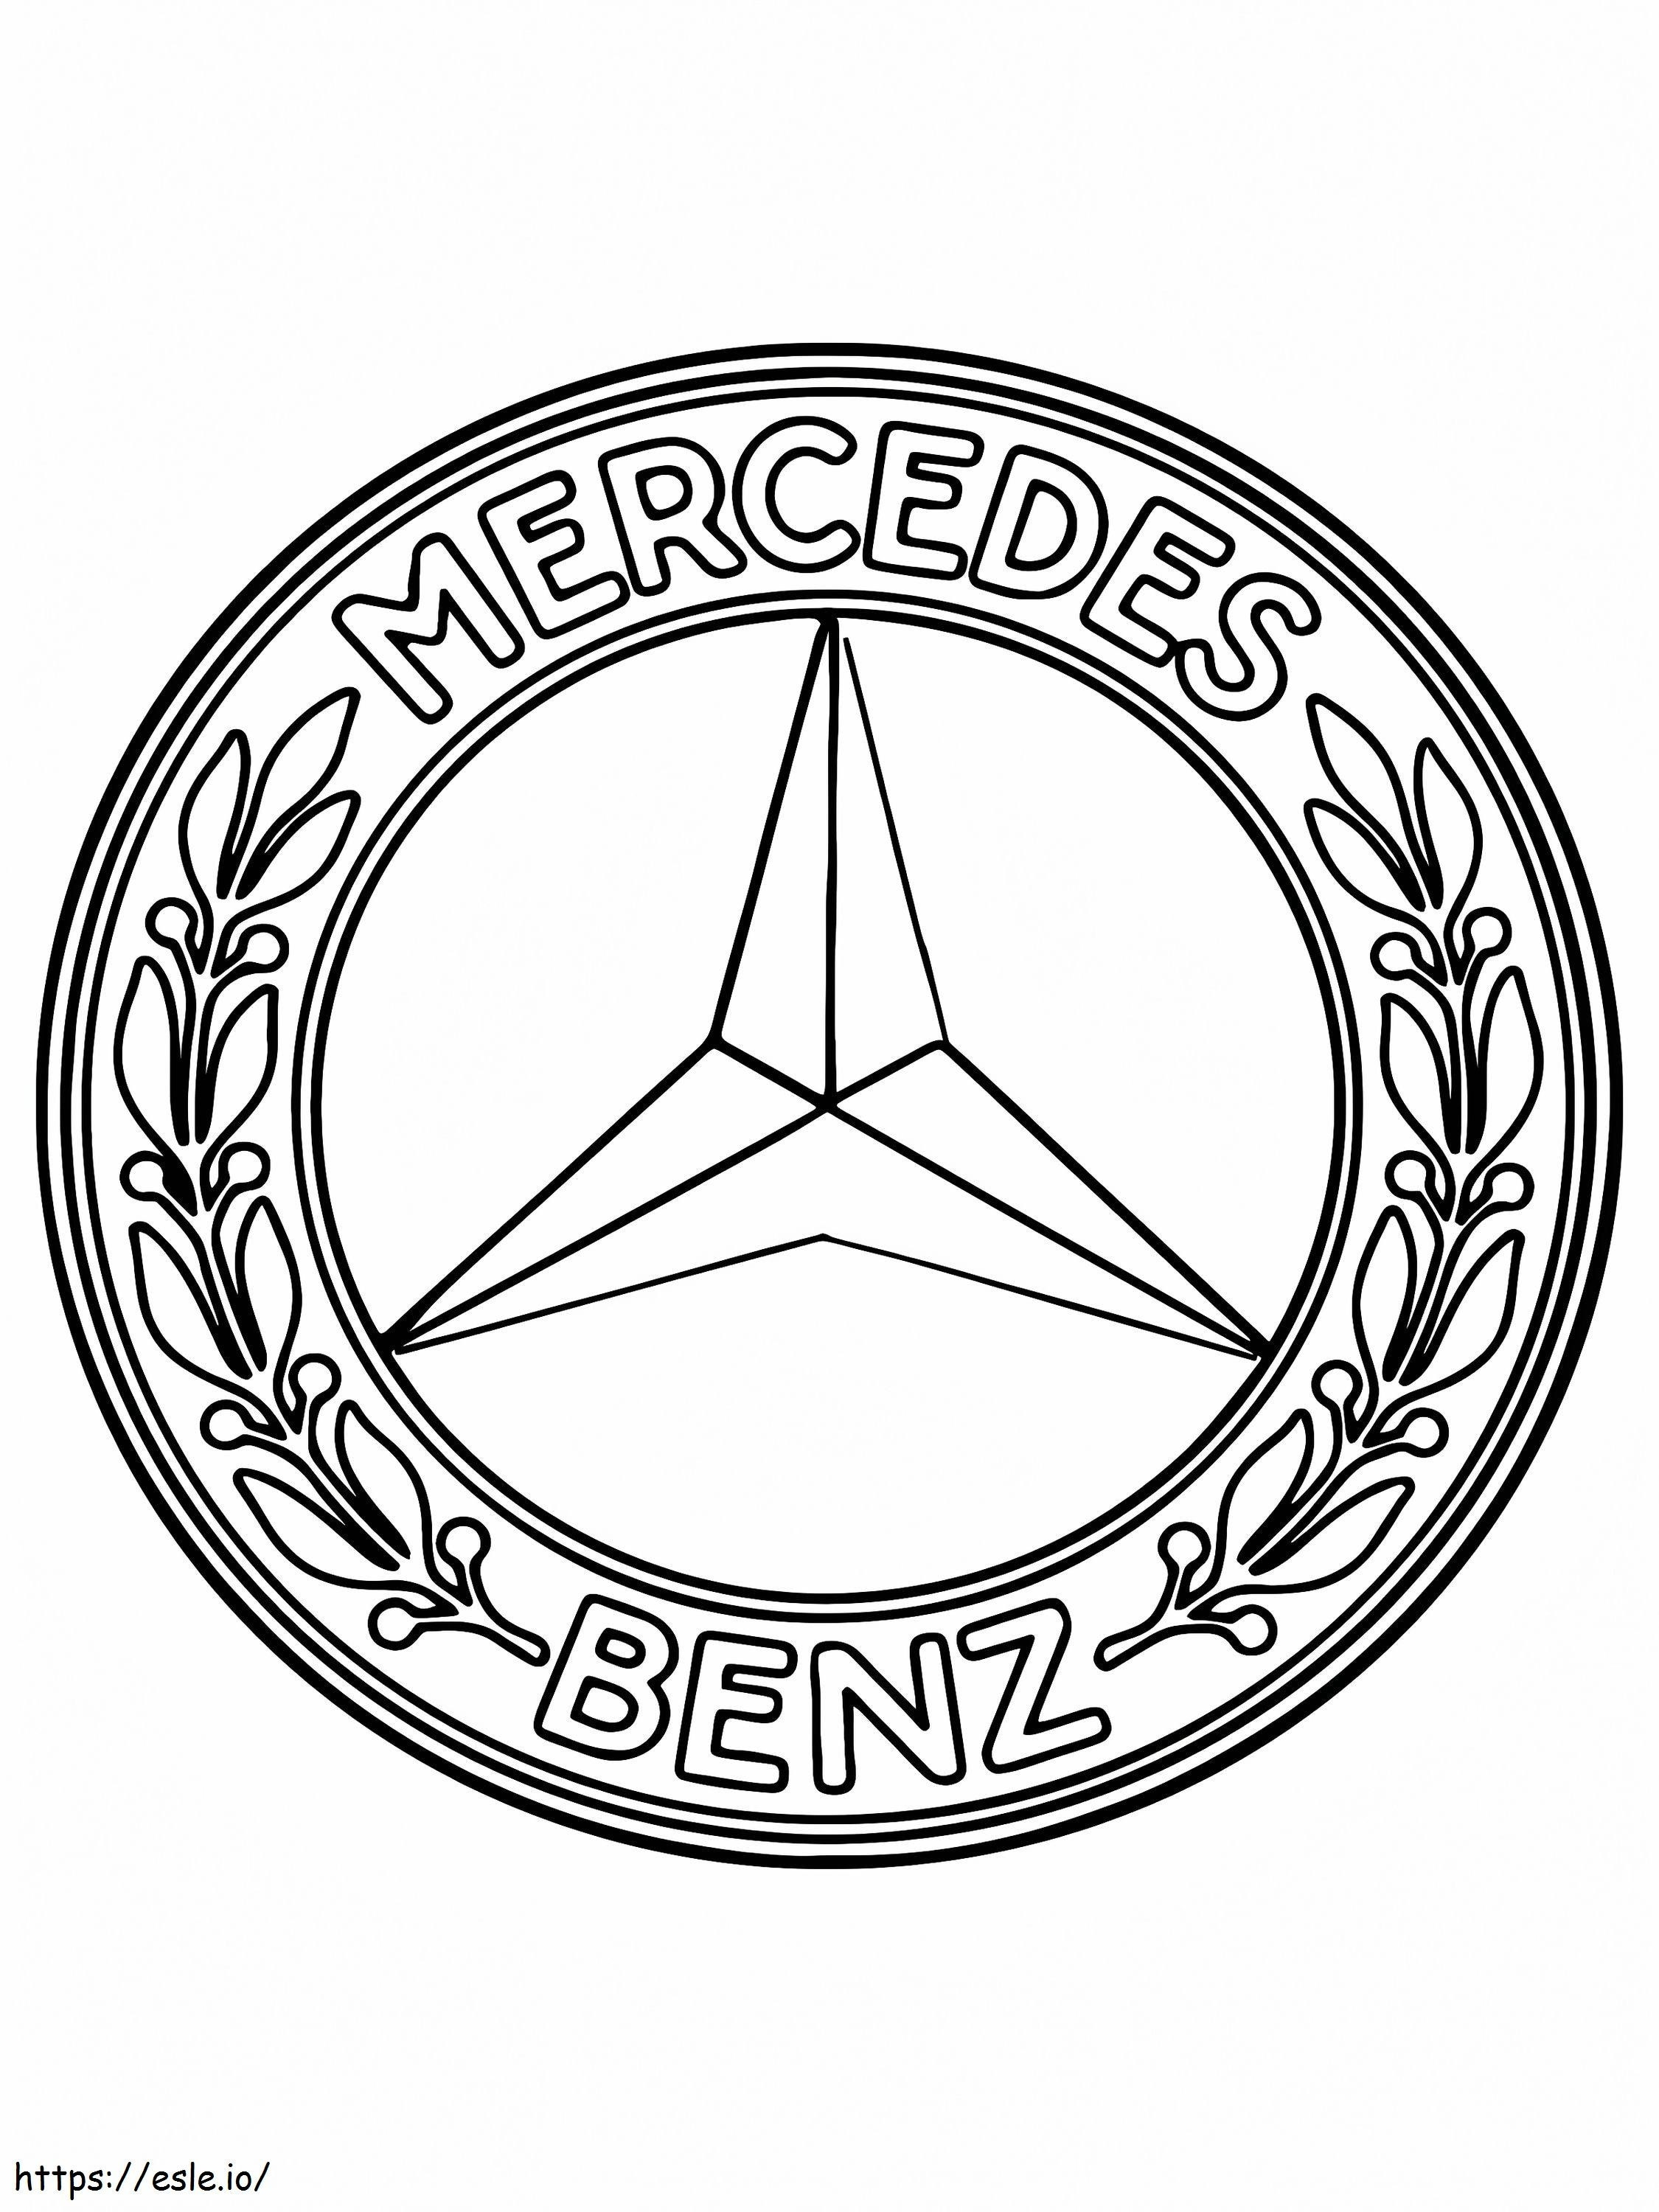 Logotipo de coche Mercedes Benz para colorear